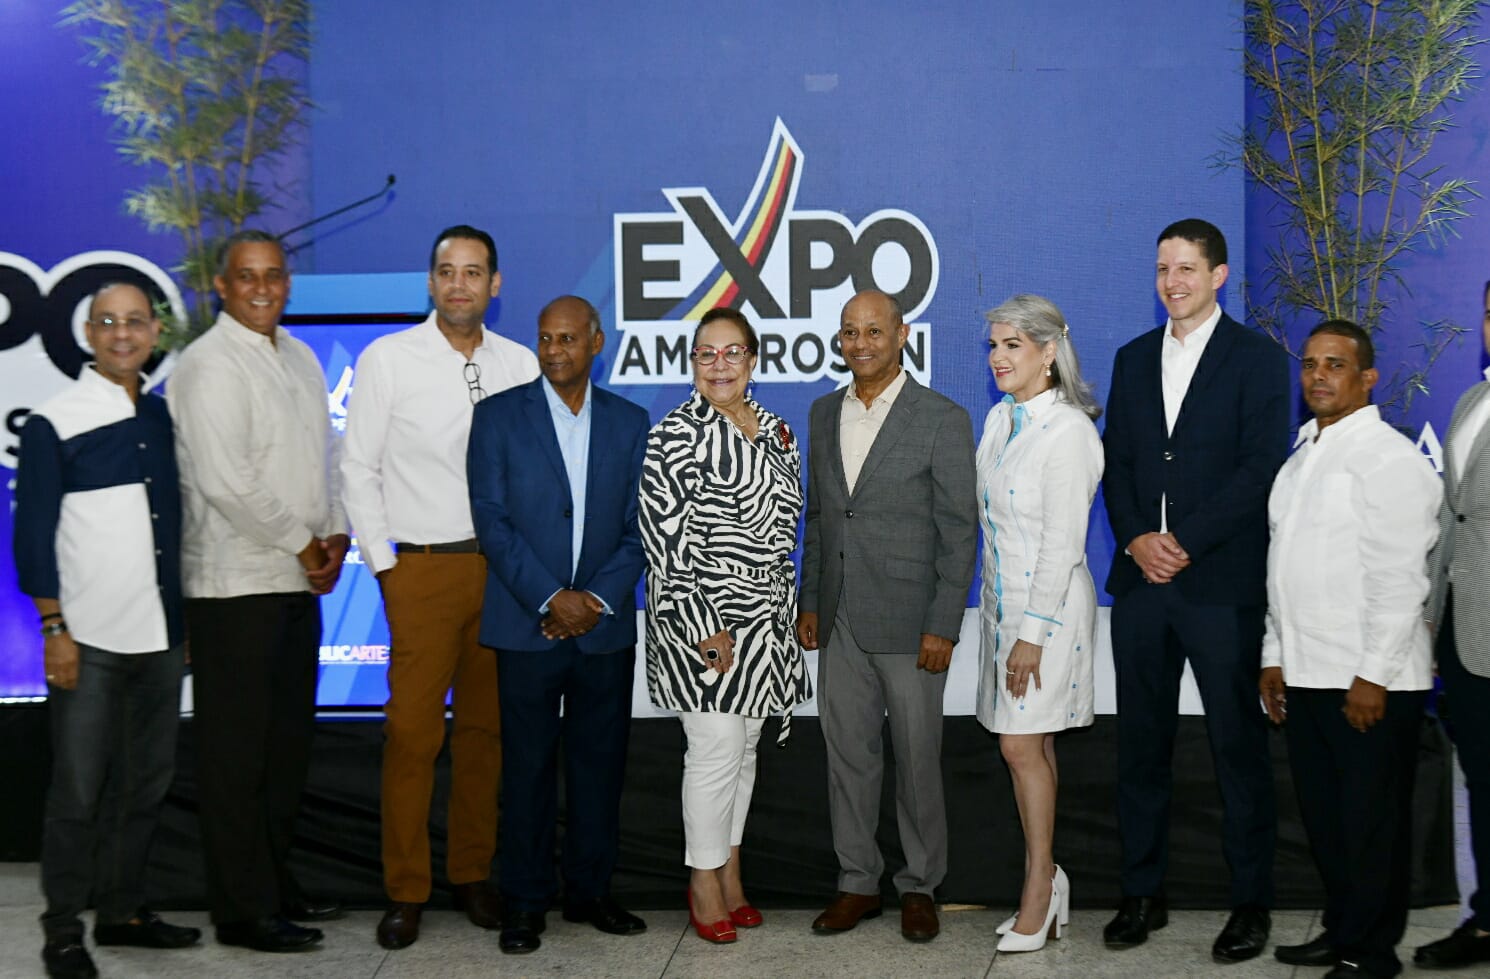 Expo Amaprosan 2023 dedicada en su trigésima segunda versión a Casa Brugal - El Diario Universal